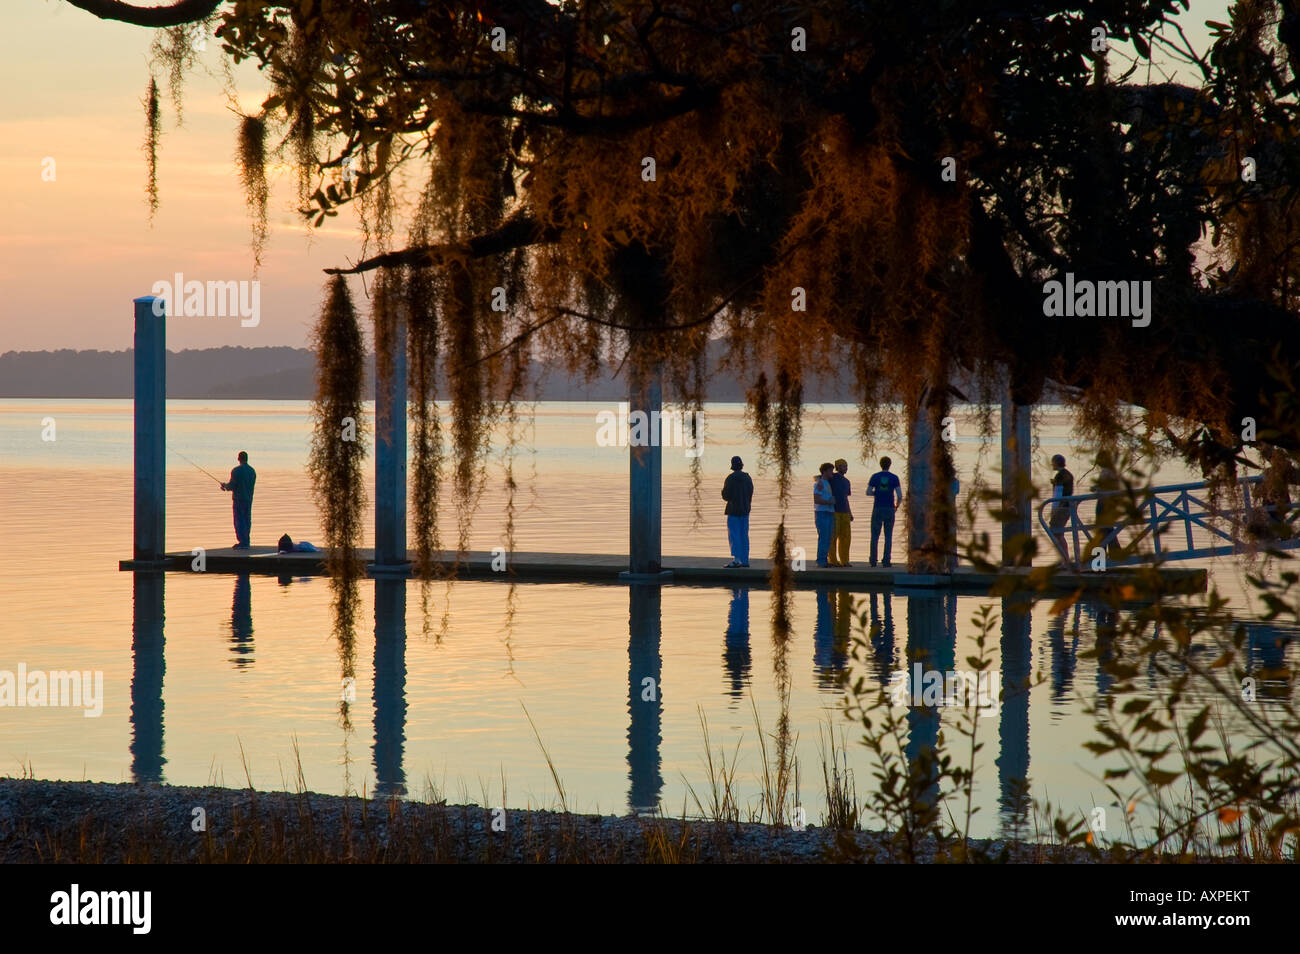 Gruppe von Touristen und einsamen Fischer stehen auf Promenade während des Sonnenuntergangs in der Nähe von Hilton head South Carolina Vereinigte Staaten von Amerika Stockfoto